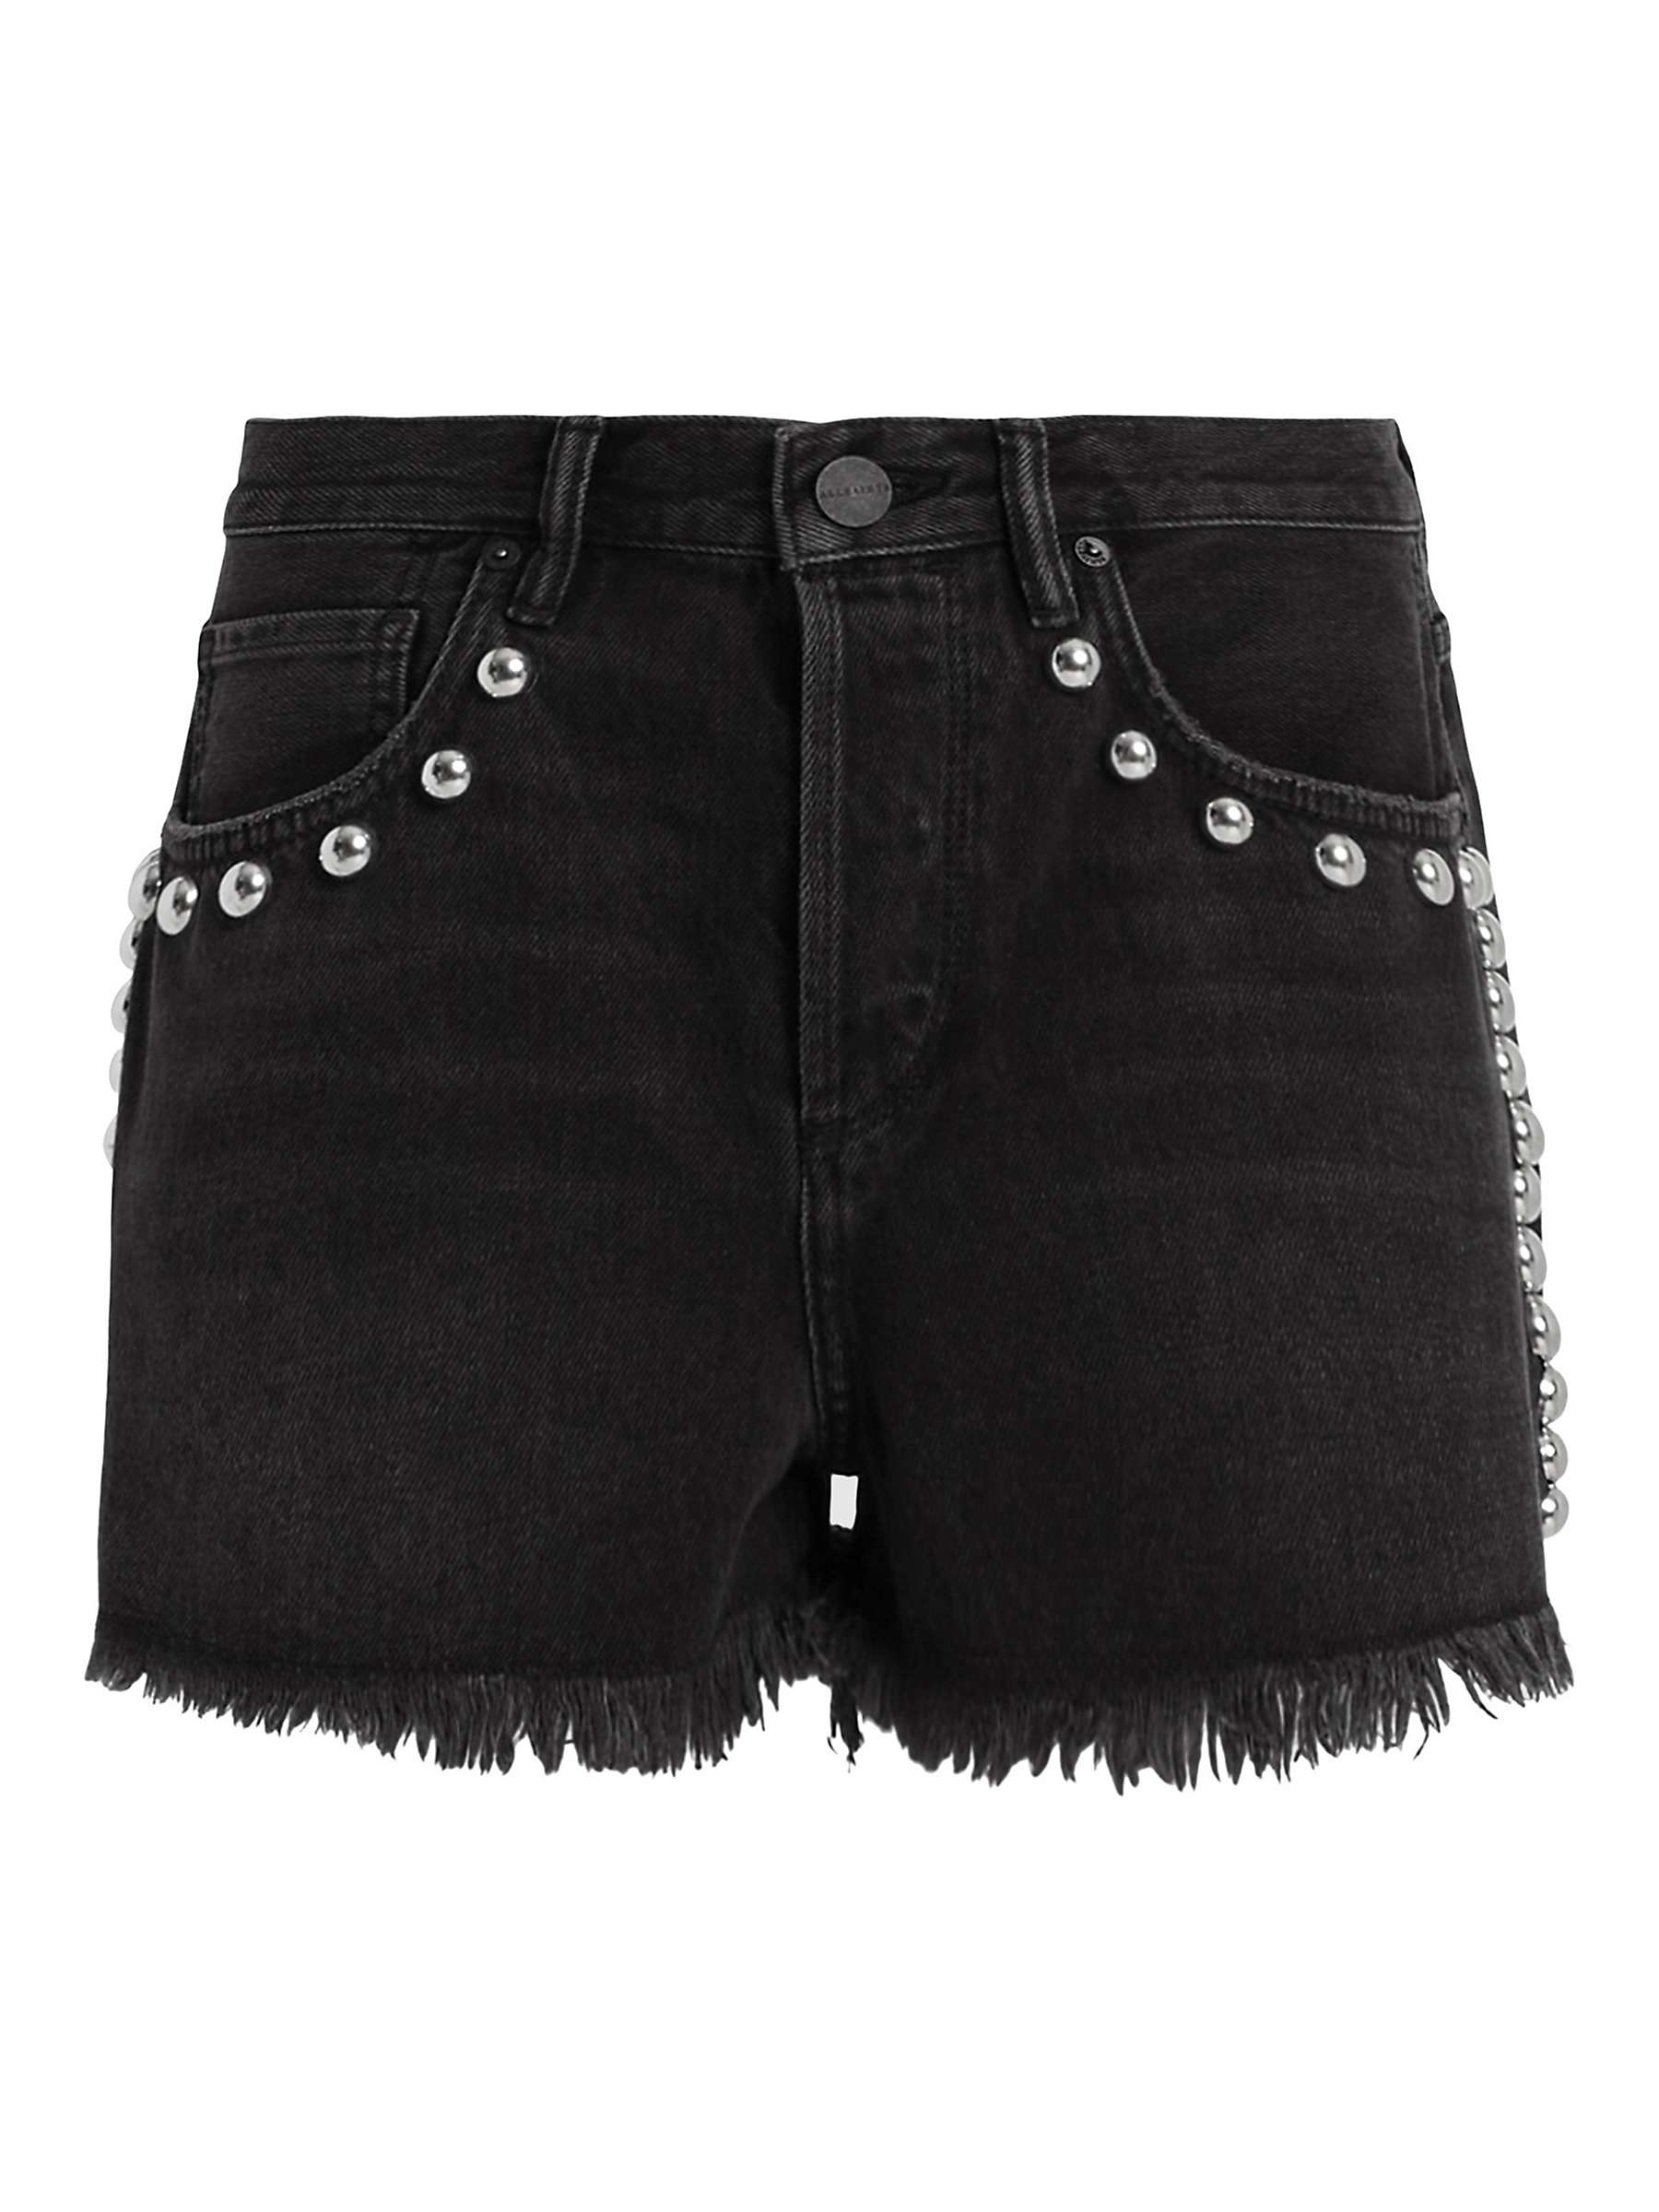 Buy AllSaints Heidi Studded Denim Cotton Shorts, Washed Black Online at johnlewis.com